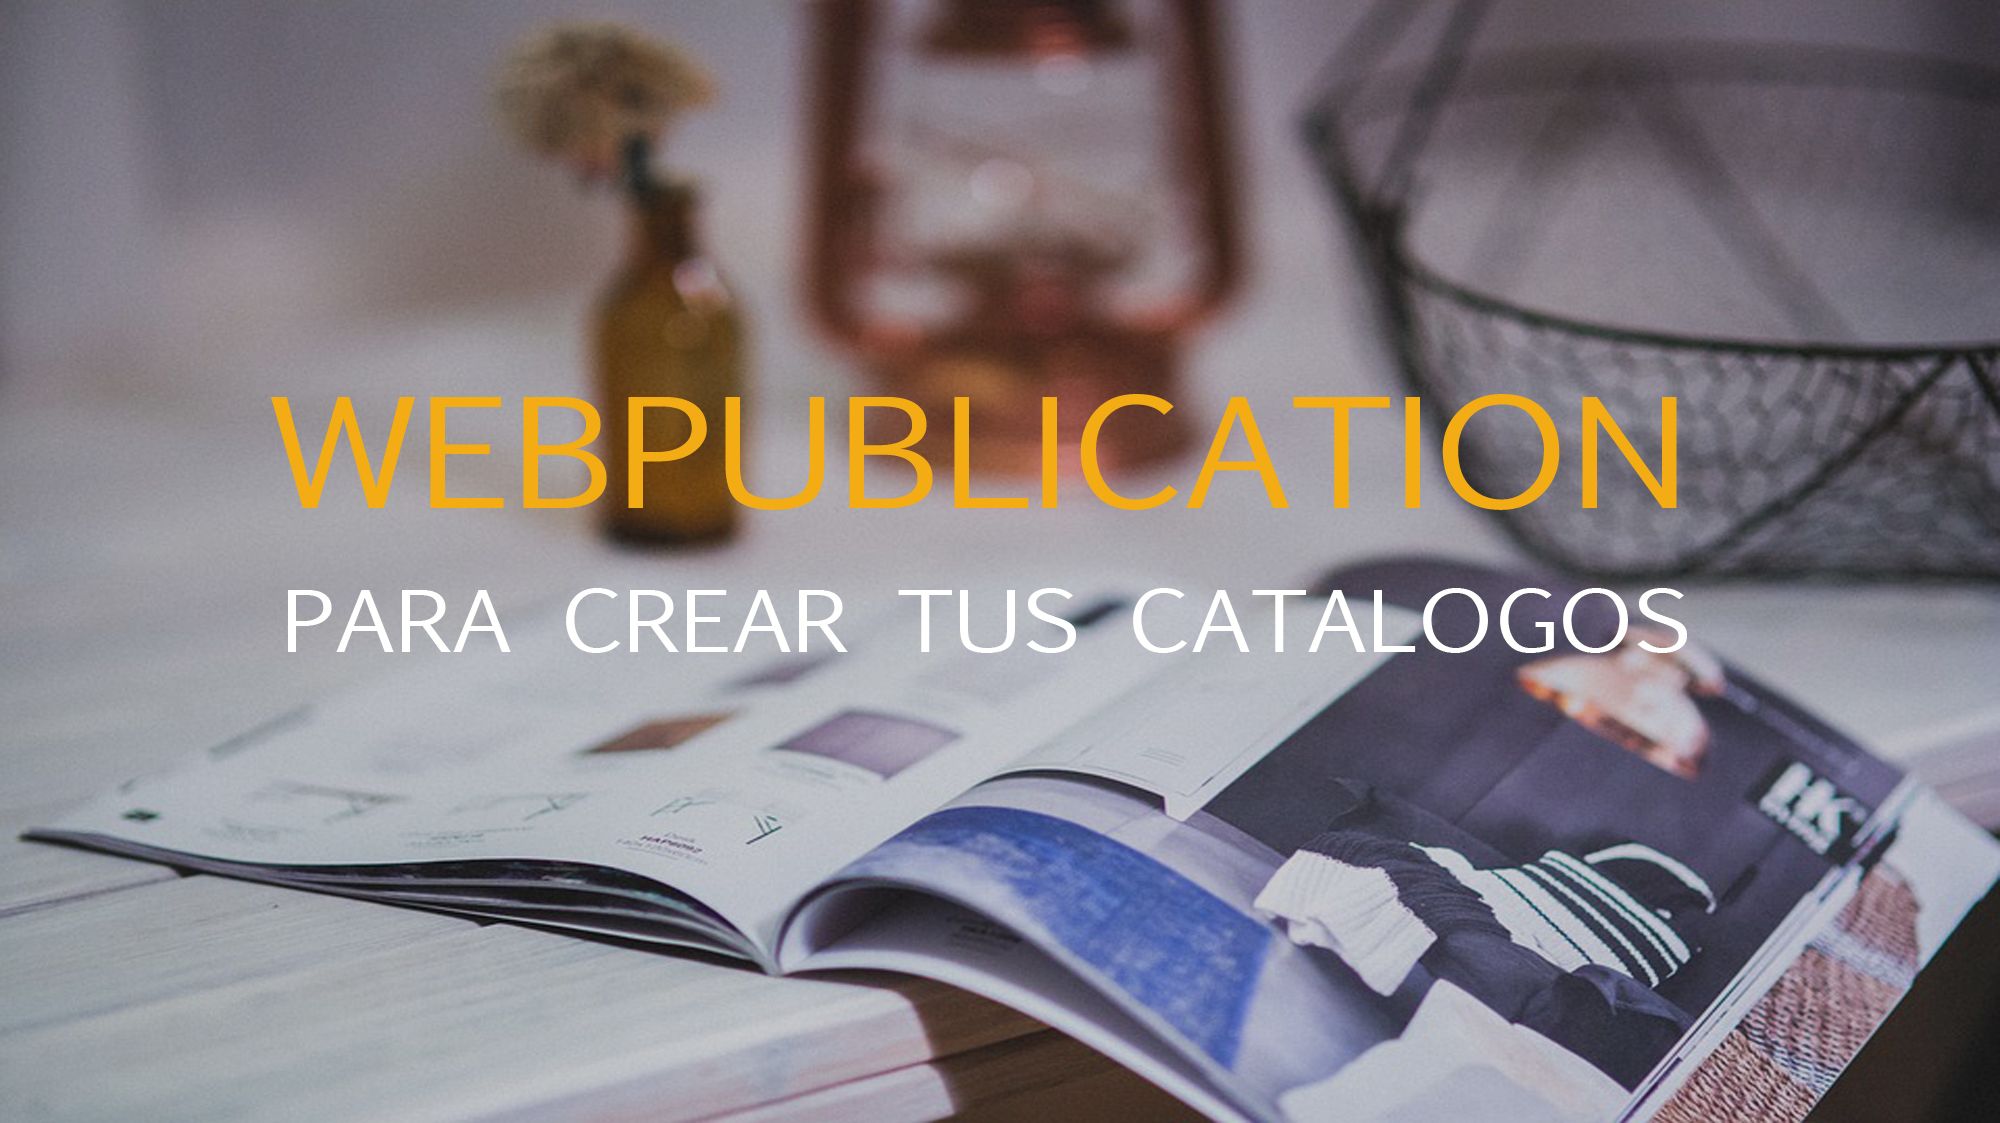 Webpublication: crea tus catalogos